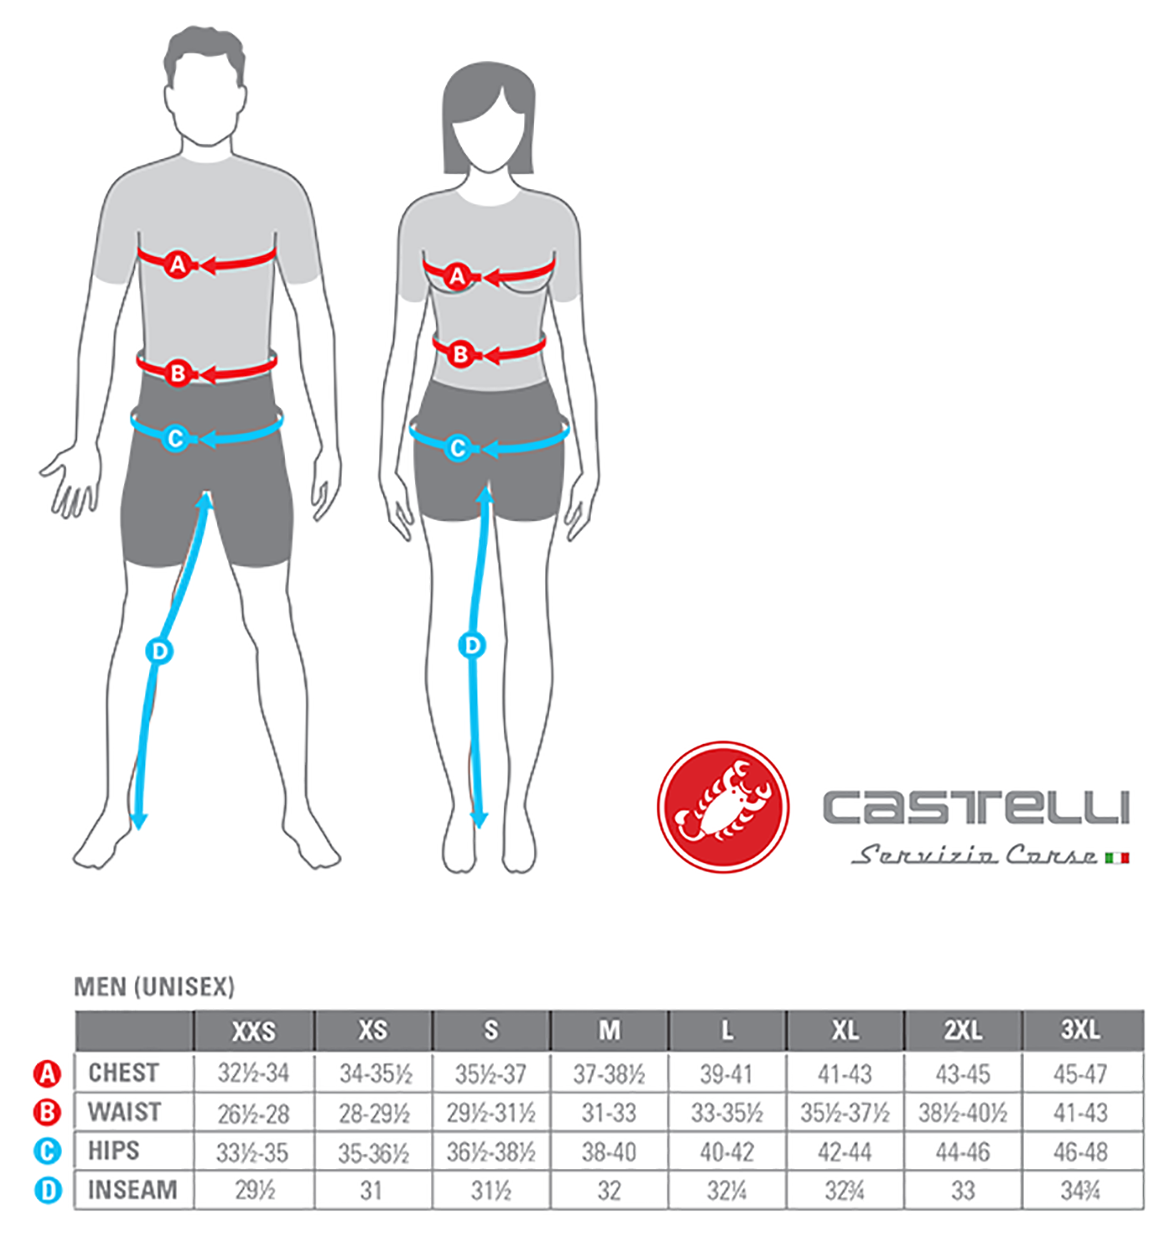 Castelli Size Chart